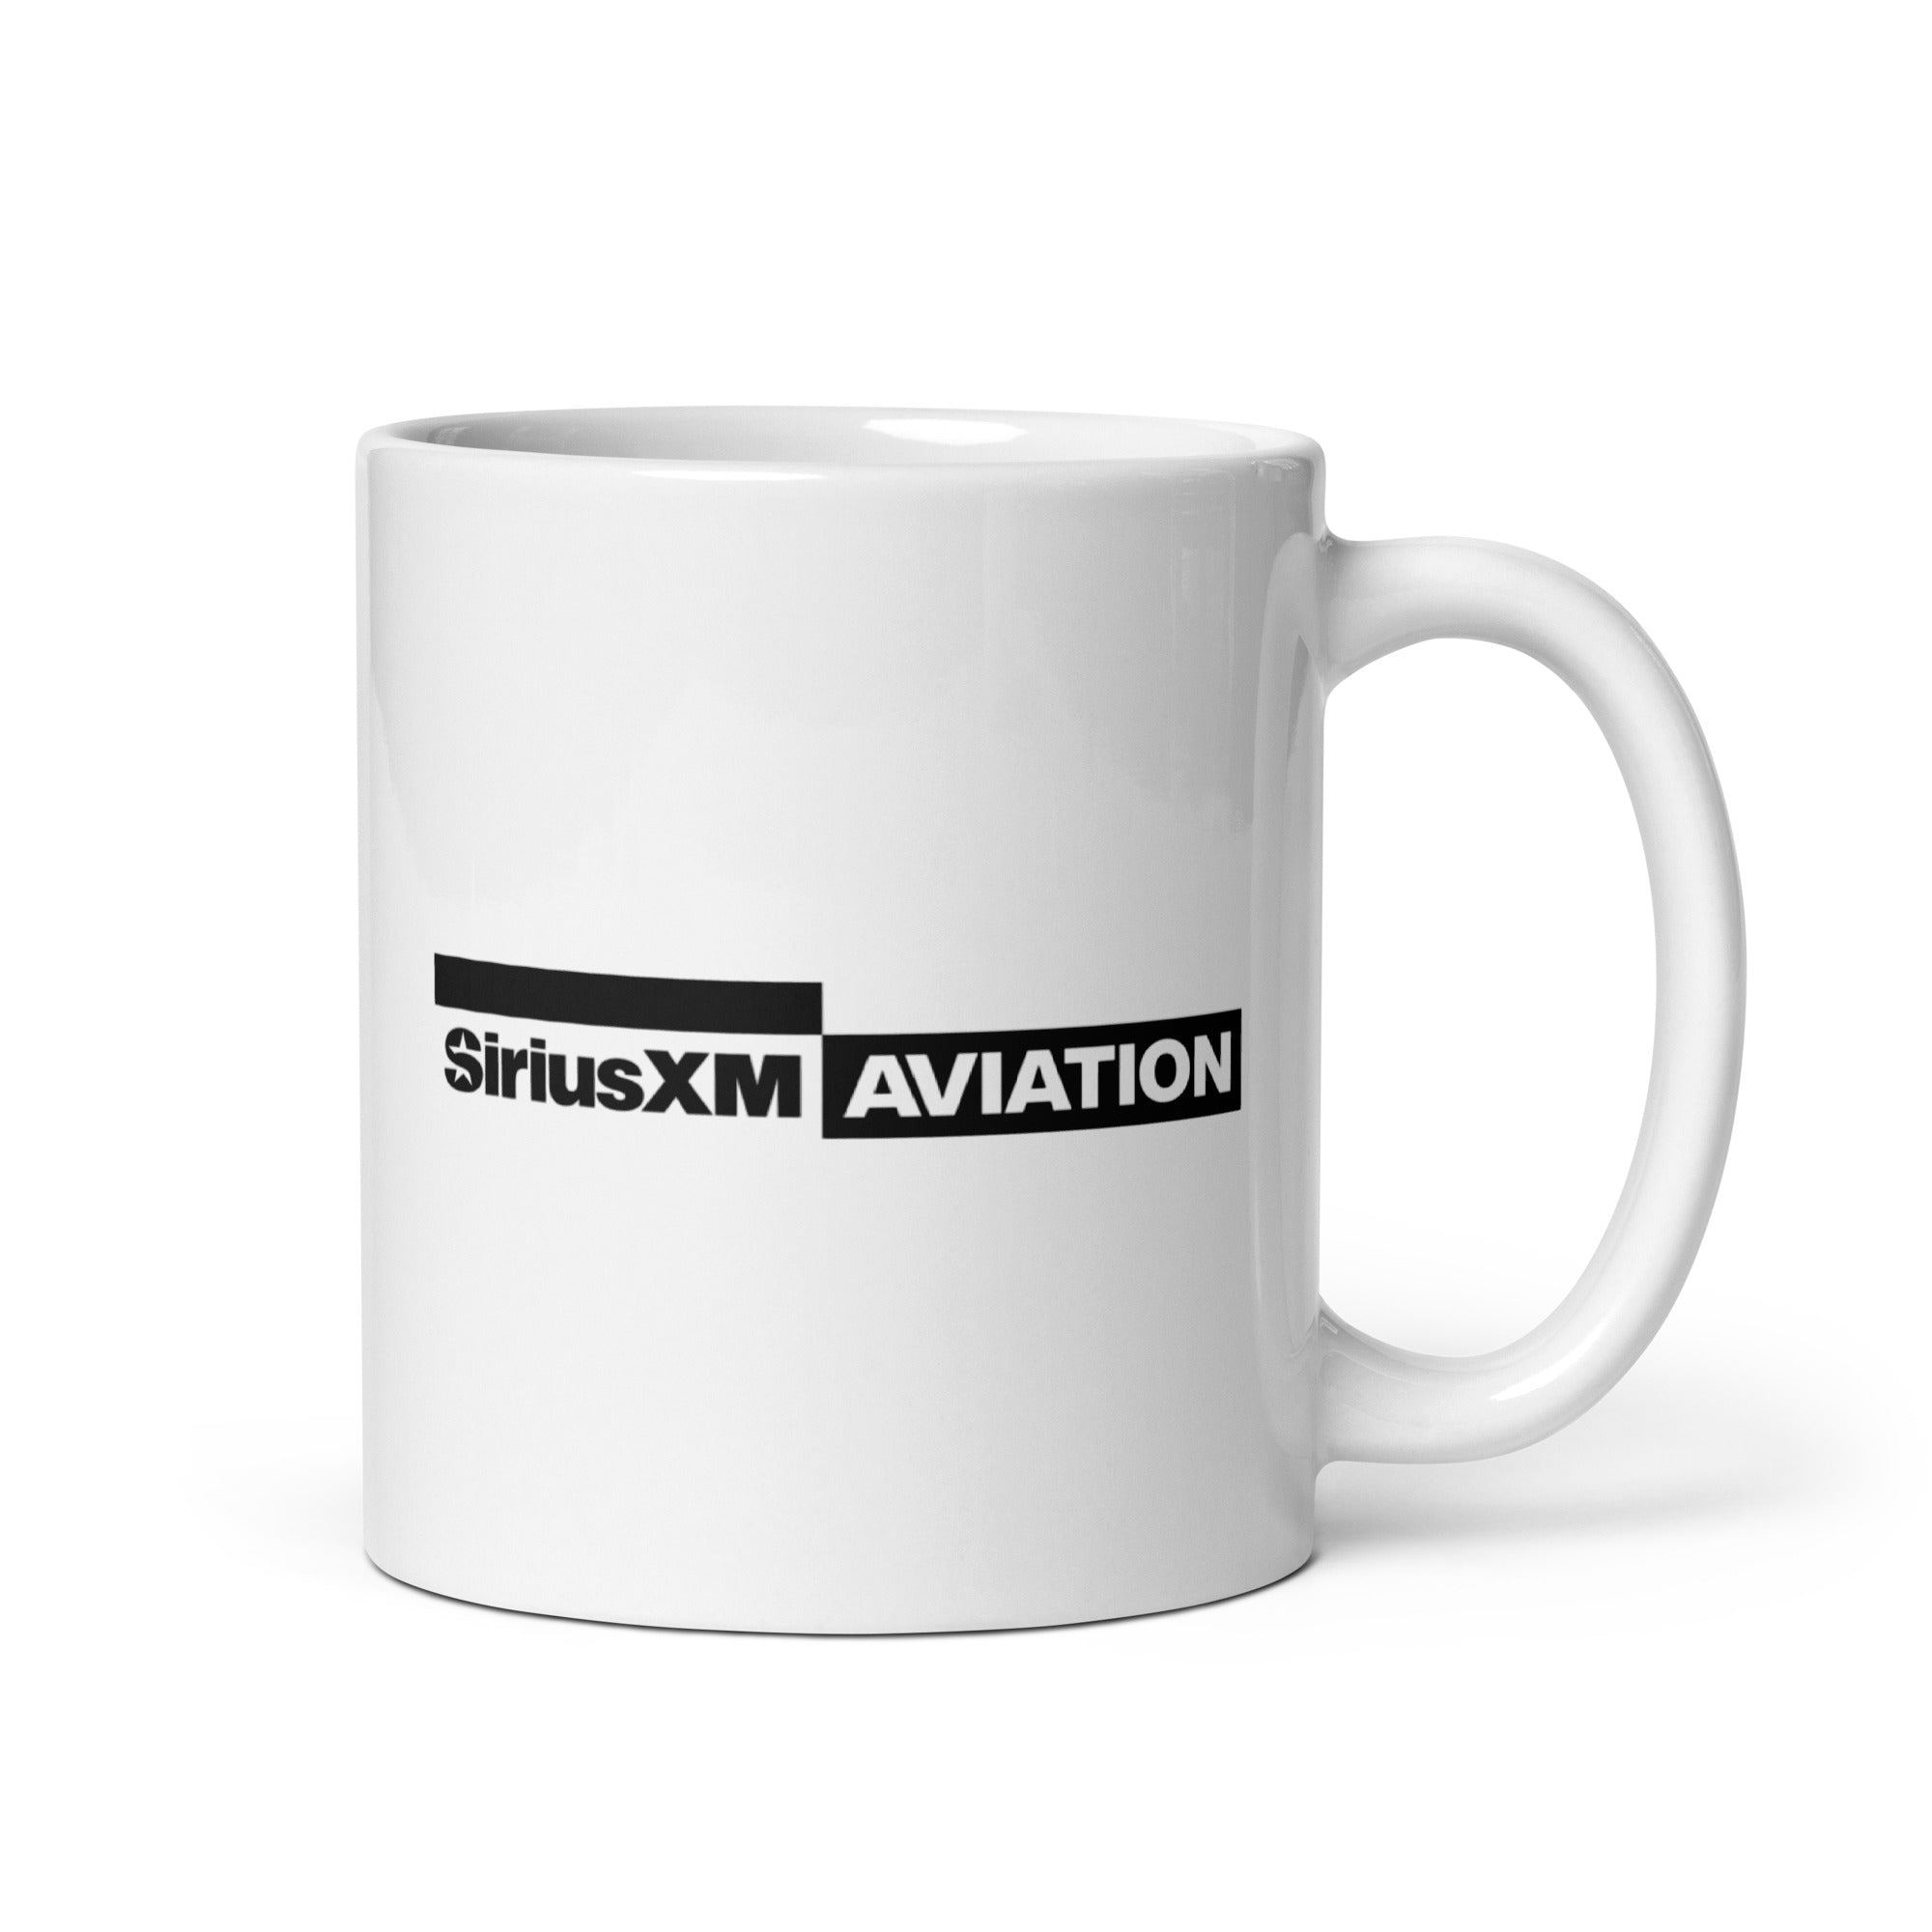 SiriusXM Aviation: Mug